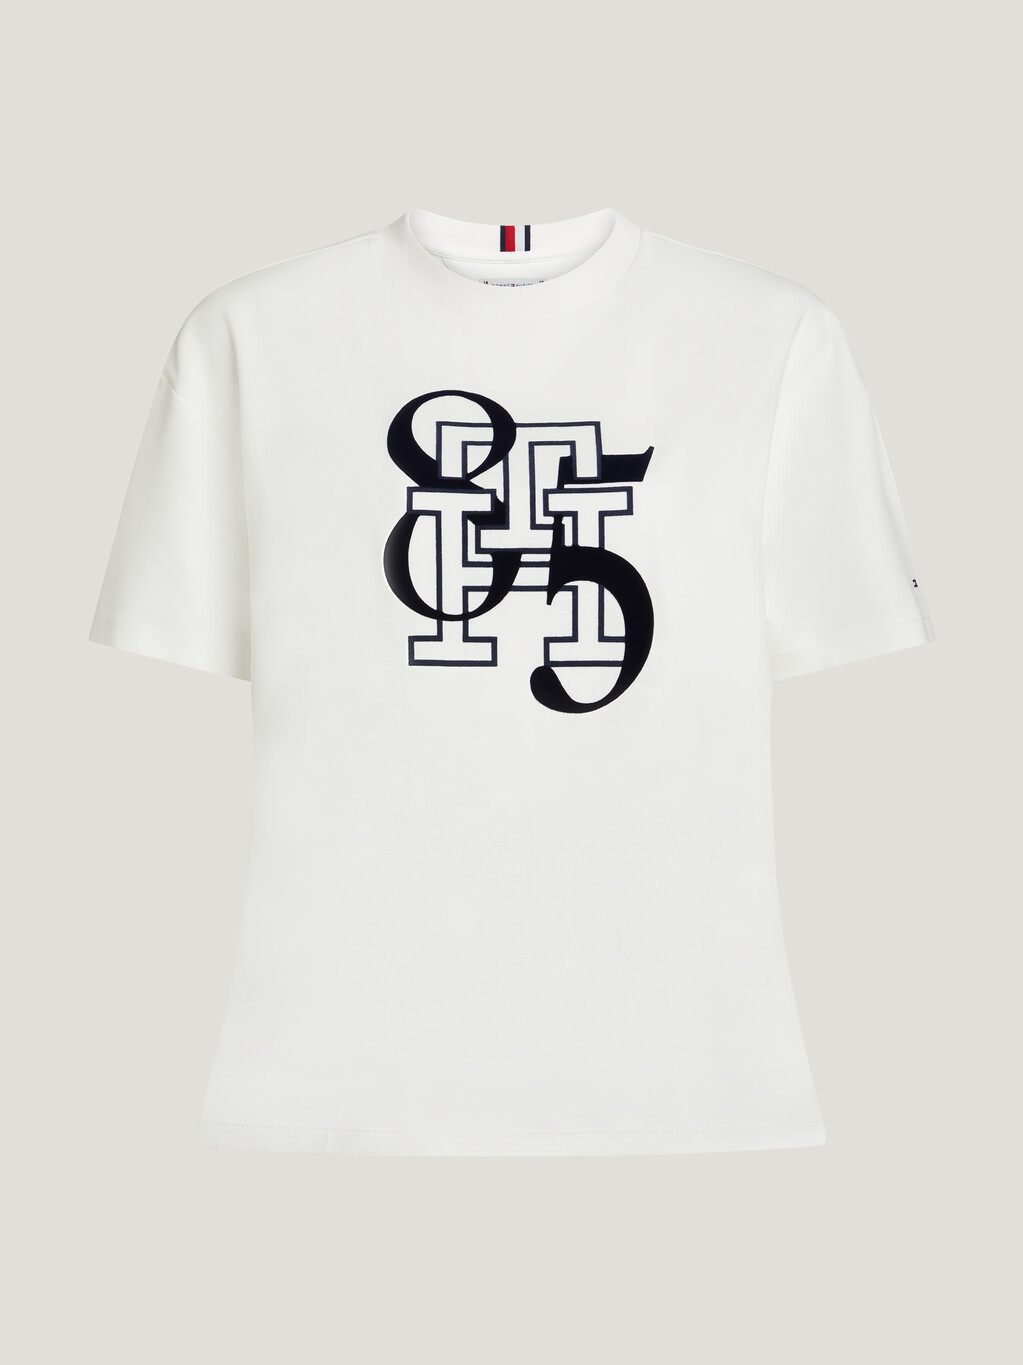 TH Monogram 85 T-Shirt, Ecru, hi-res